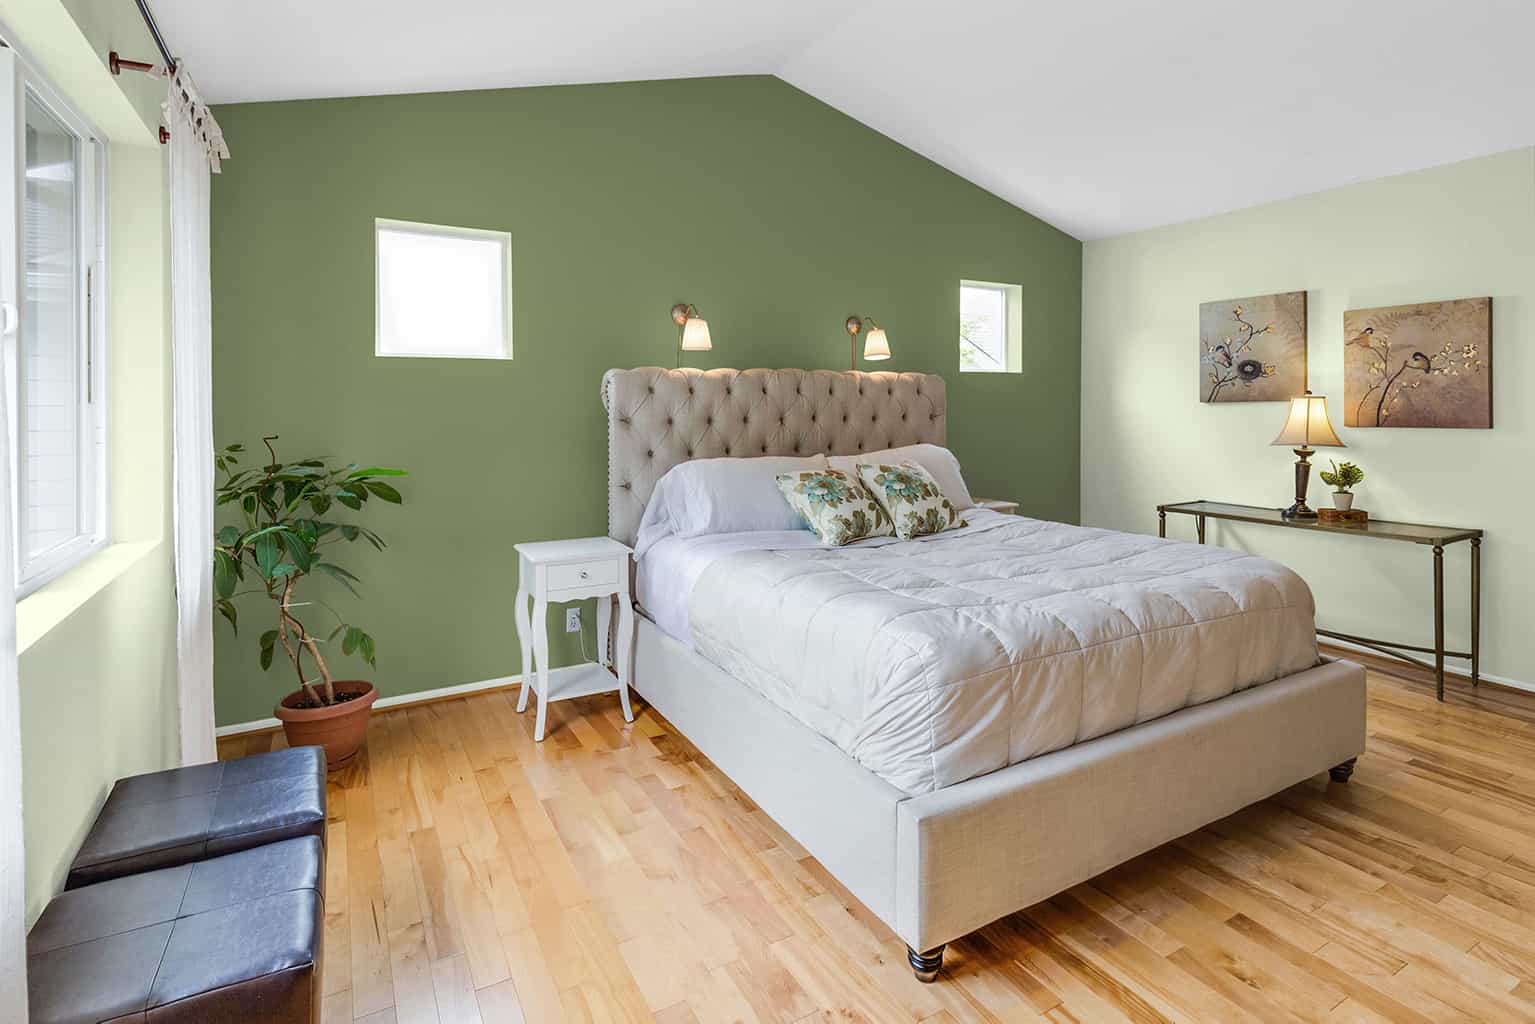 Designer Bedroom Paint Colors Bedroom Paint Colors Choosing Choose